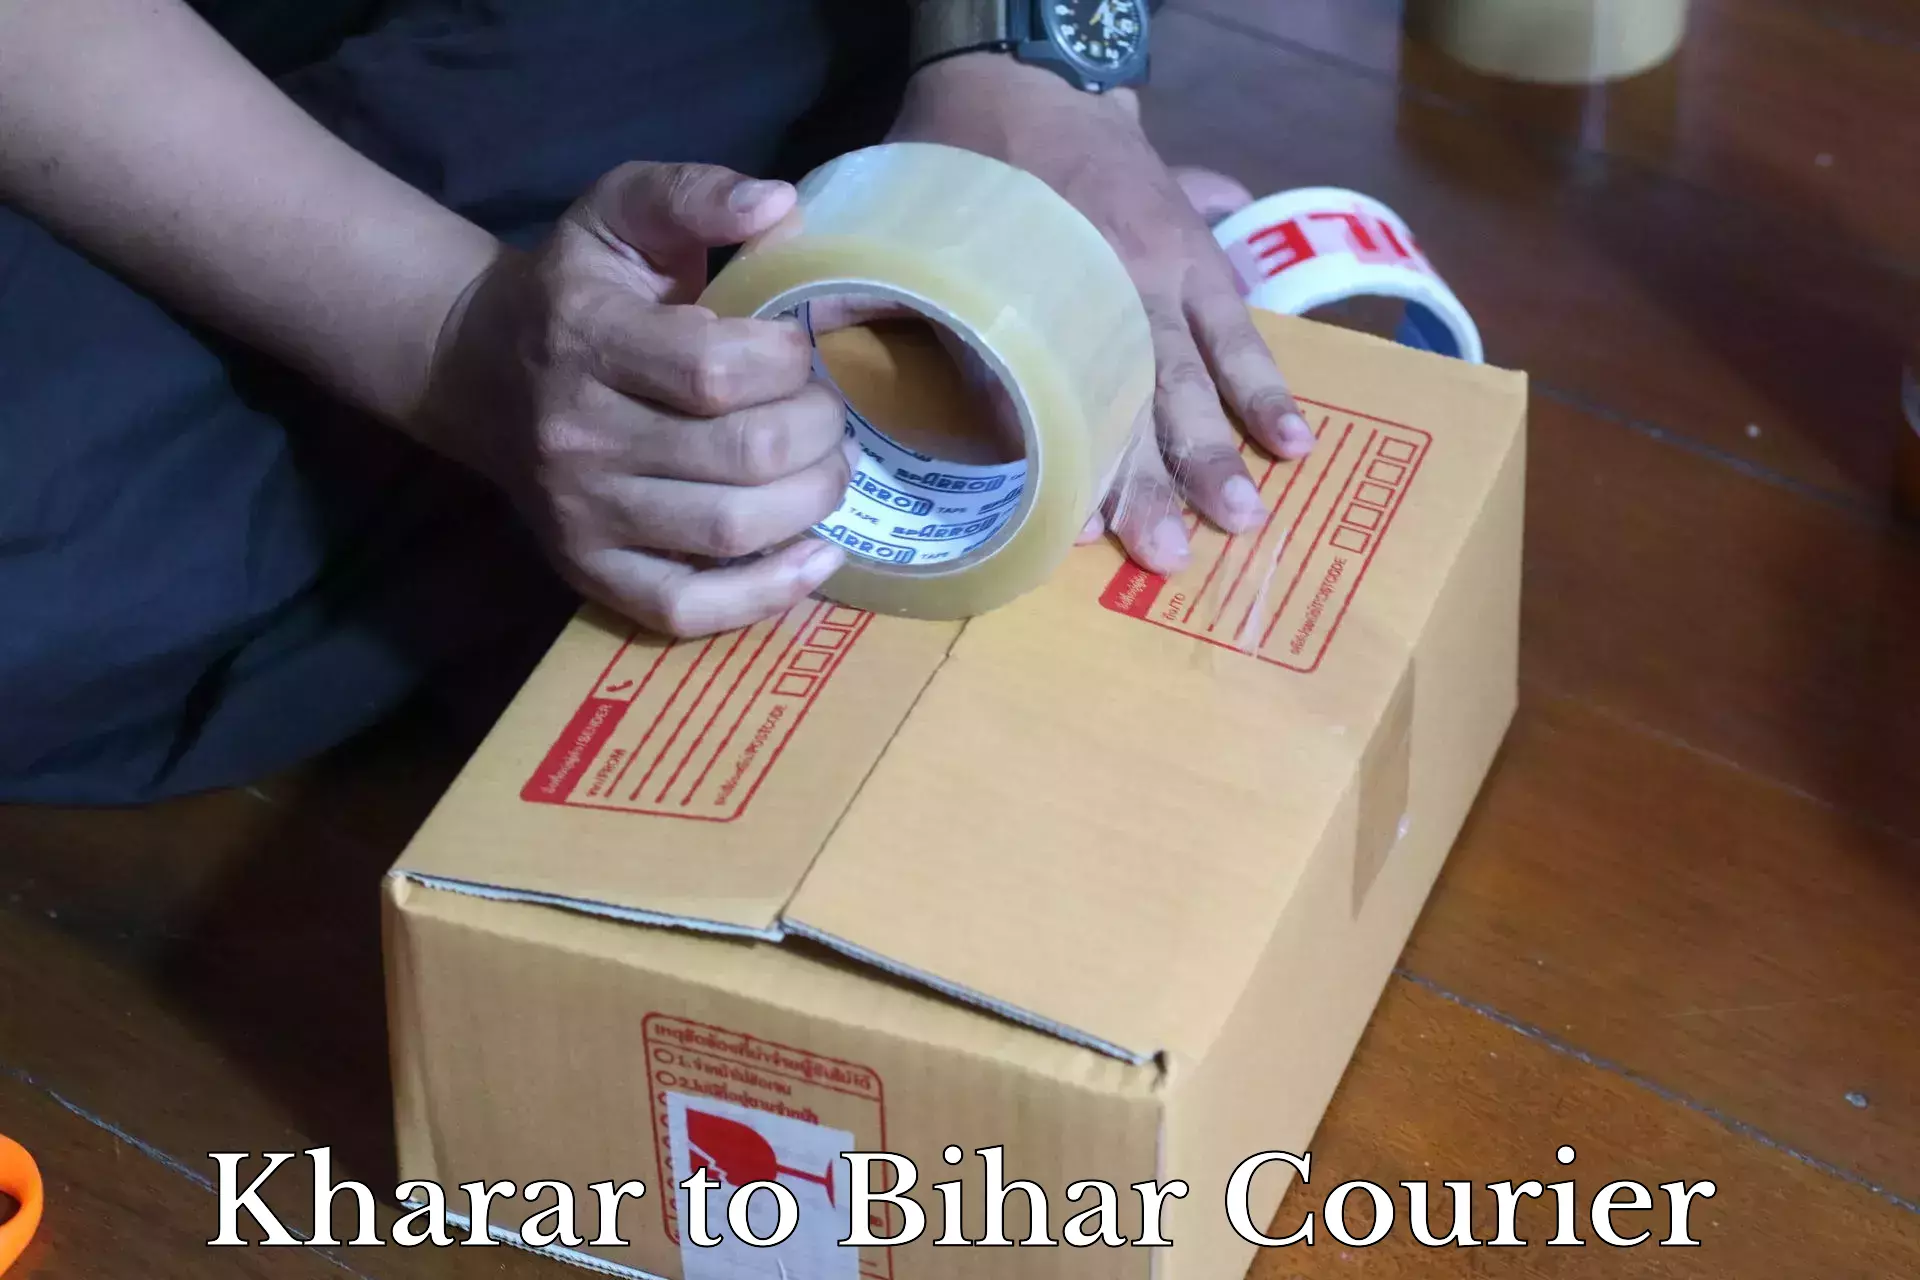 Bulk shipment Kharar to Bihar